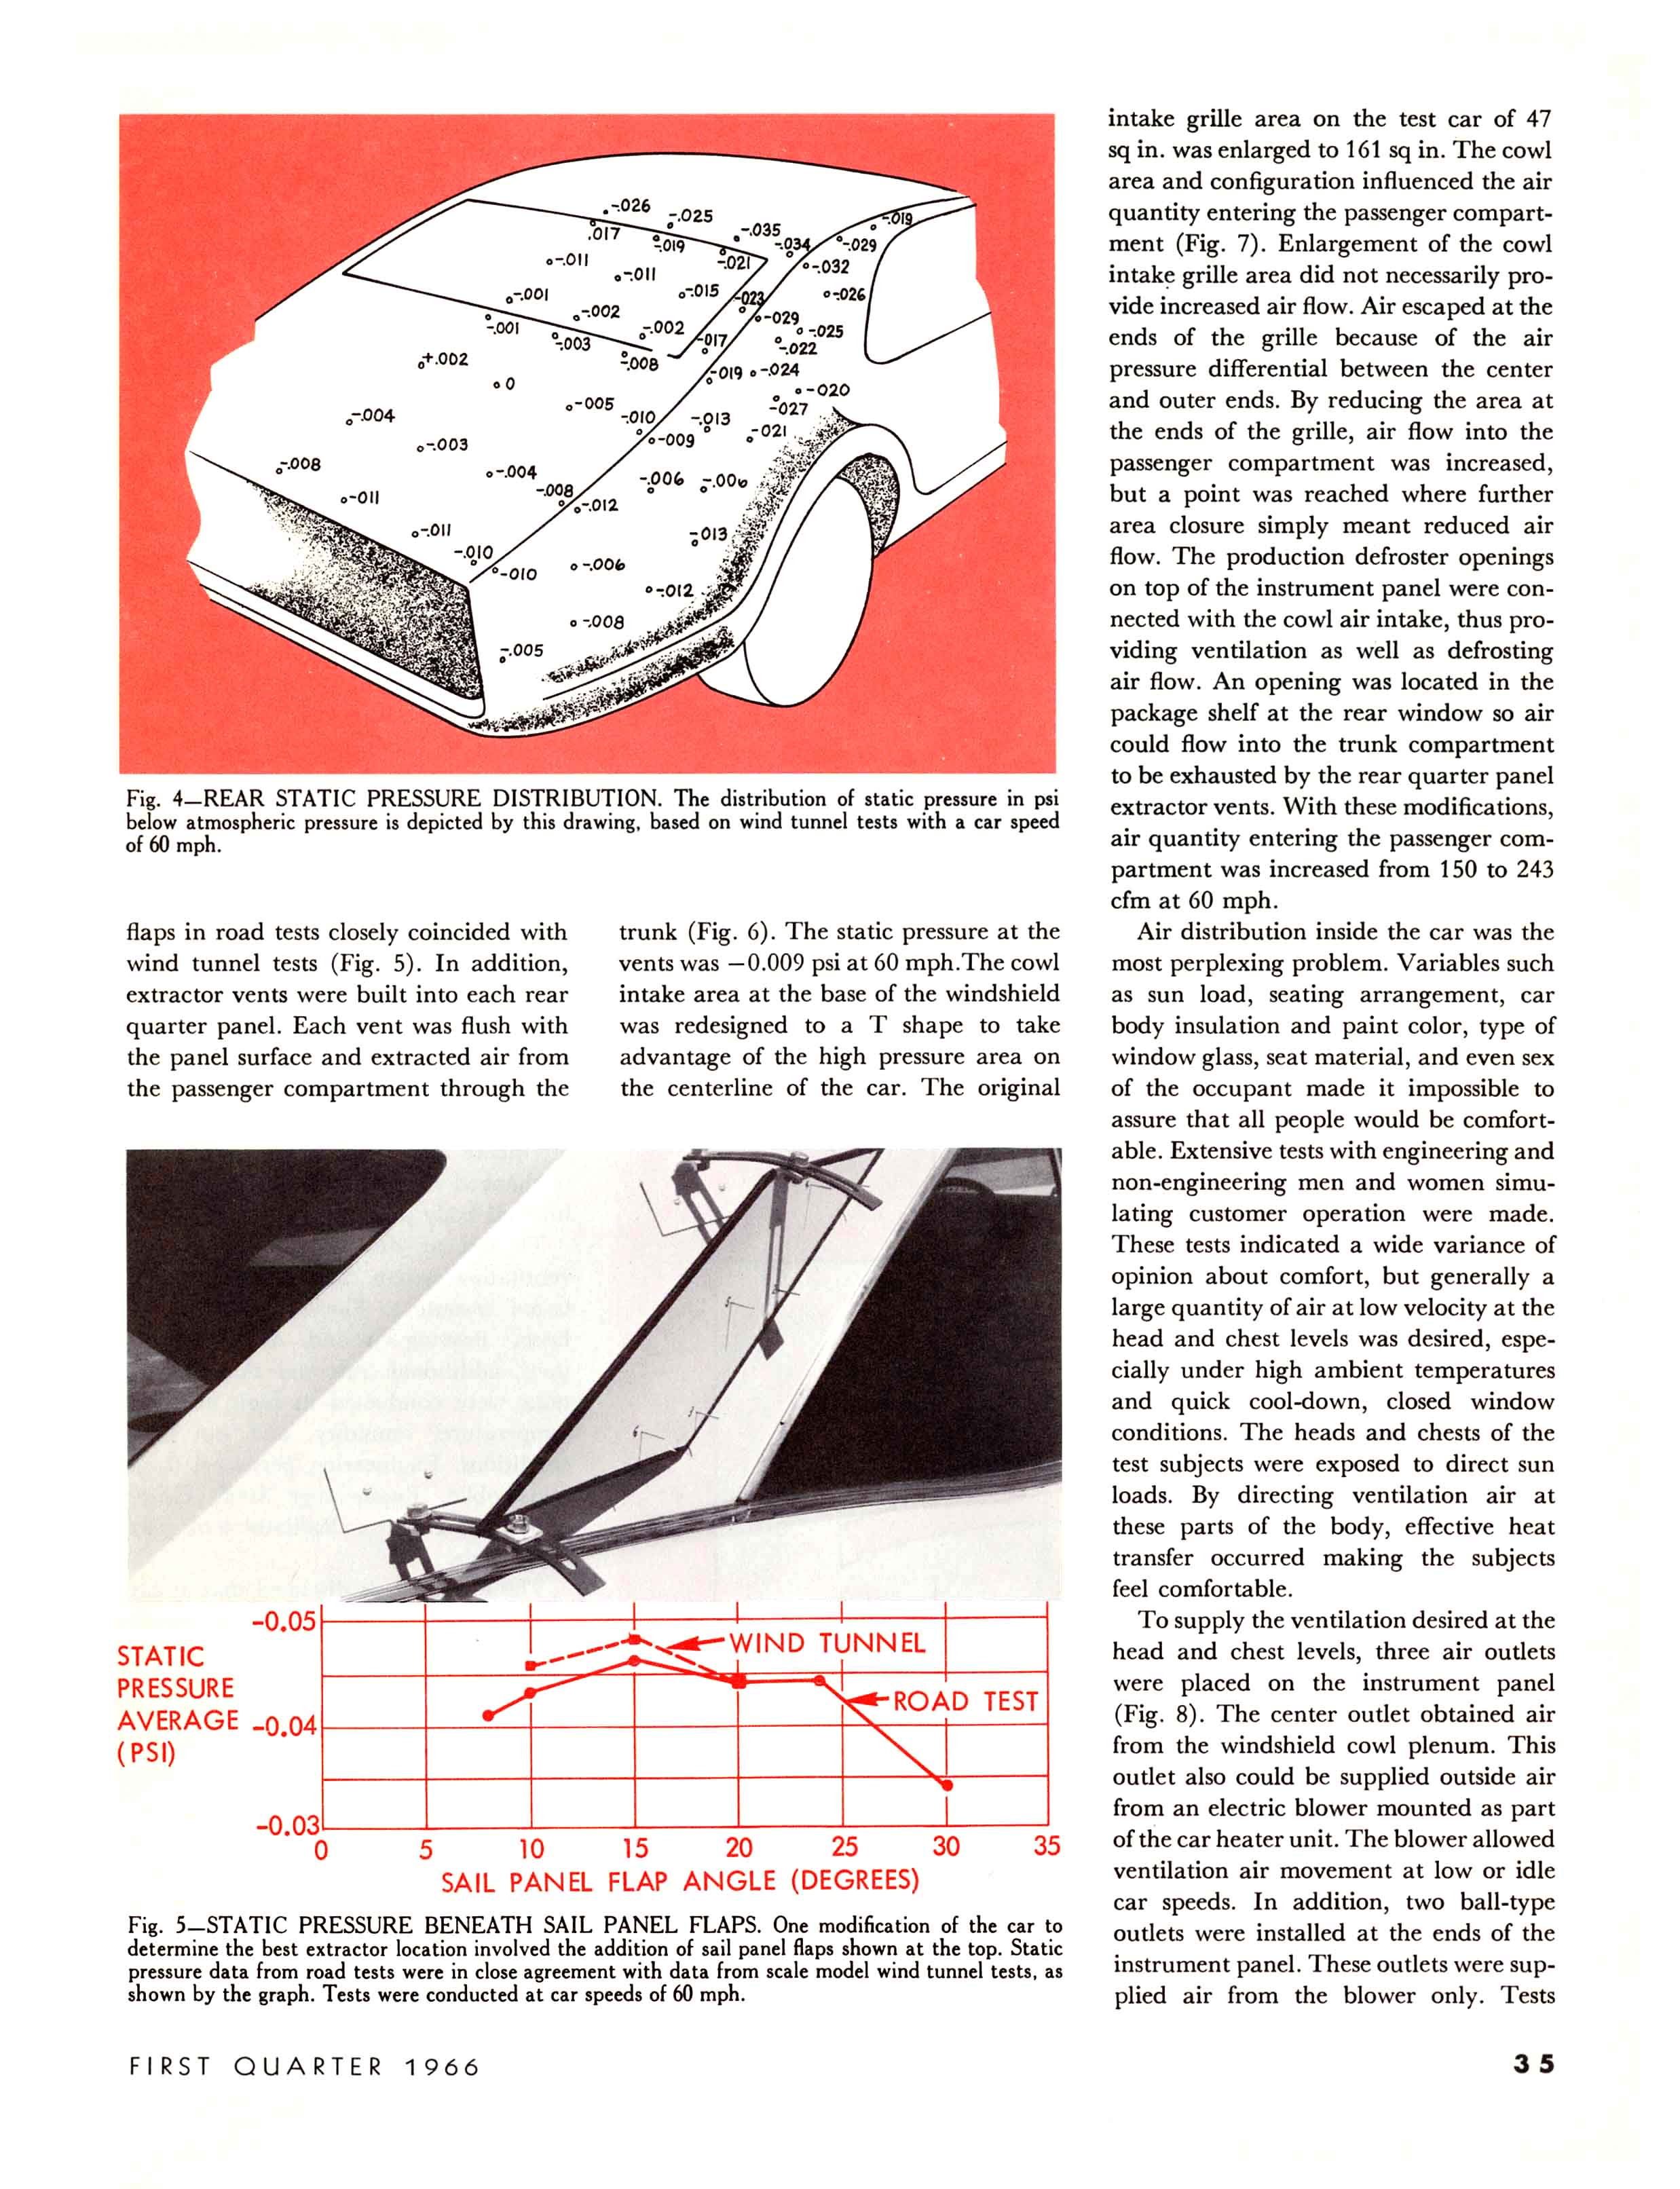 1966_GM_Eng_Journal_Qtr1-35